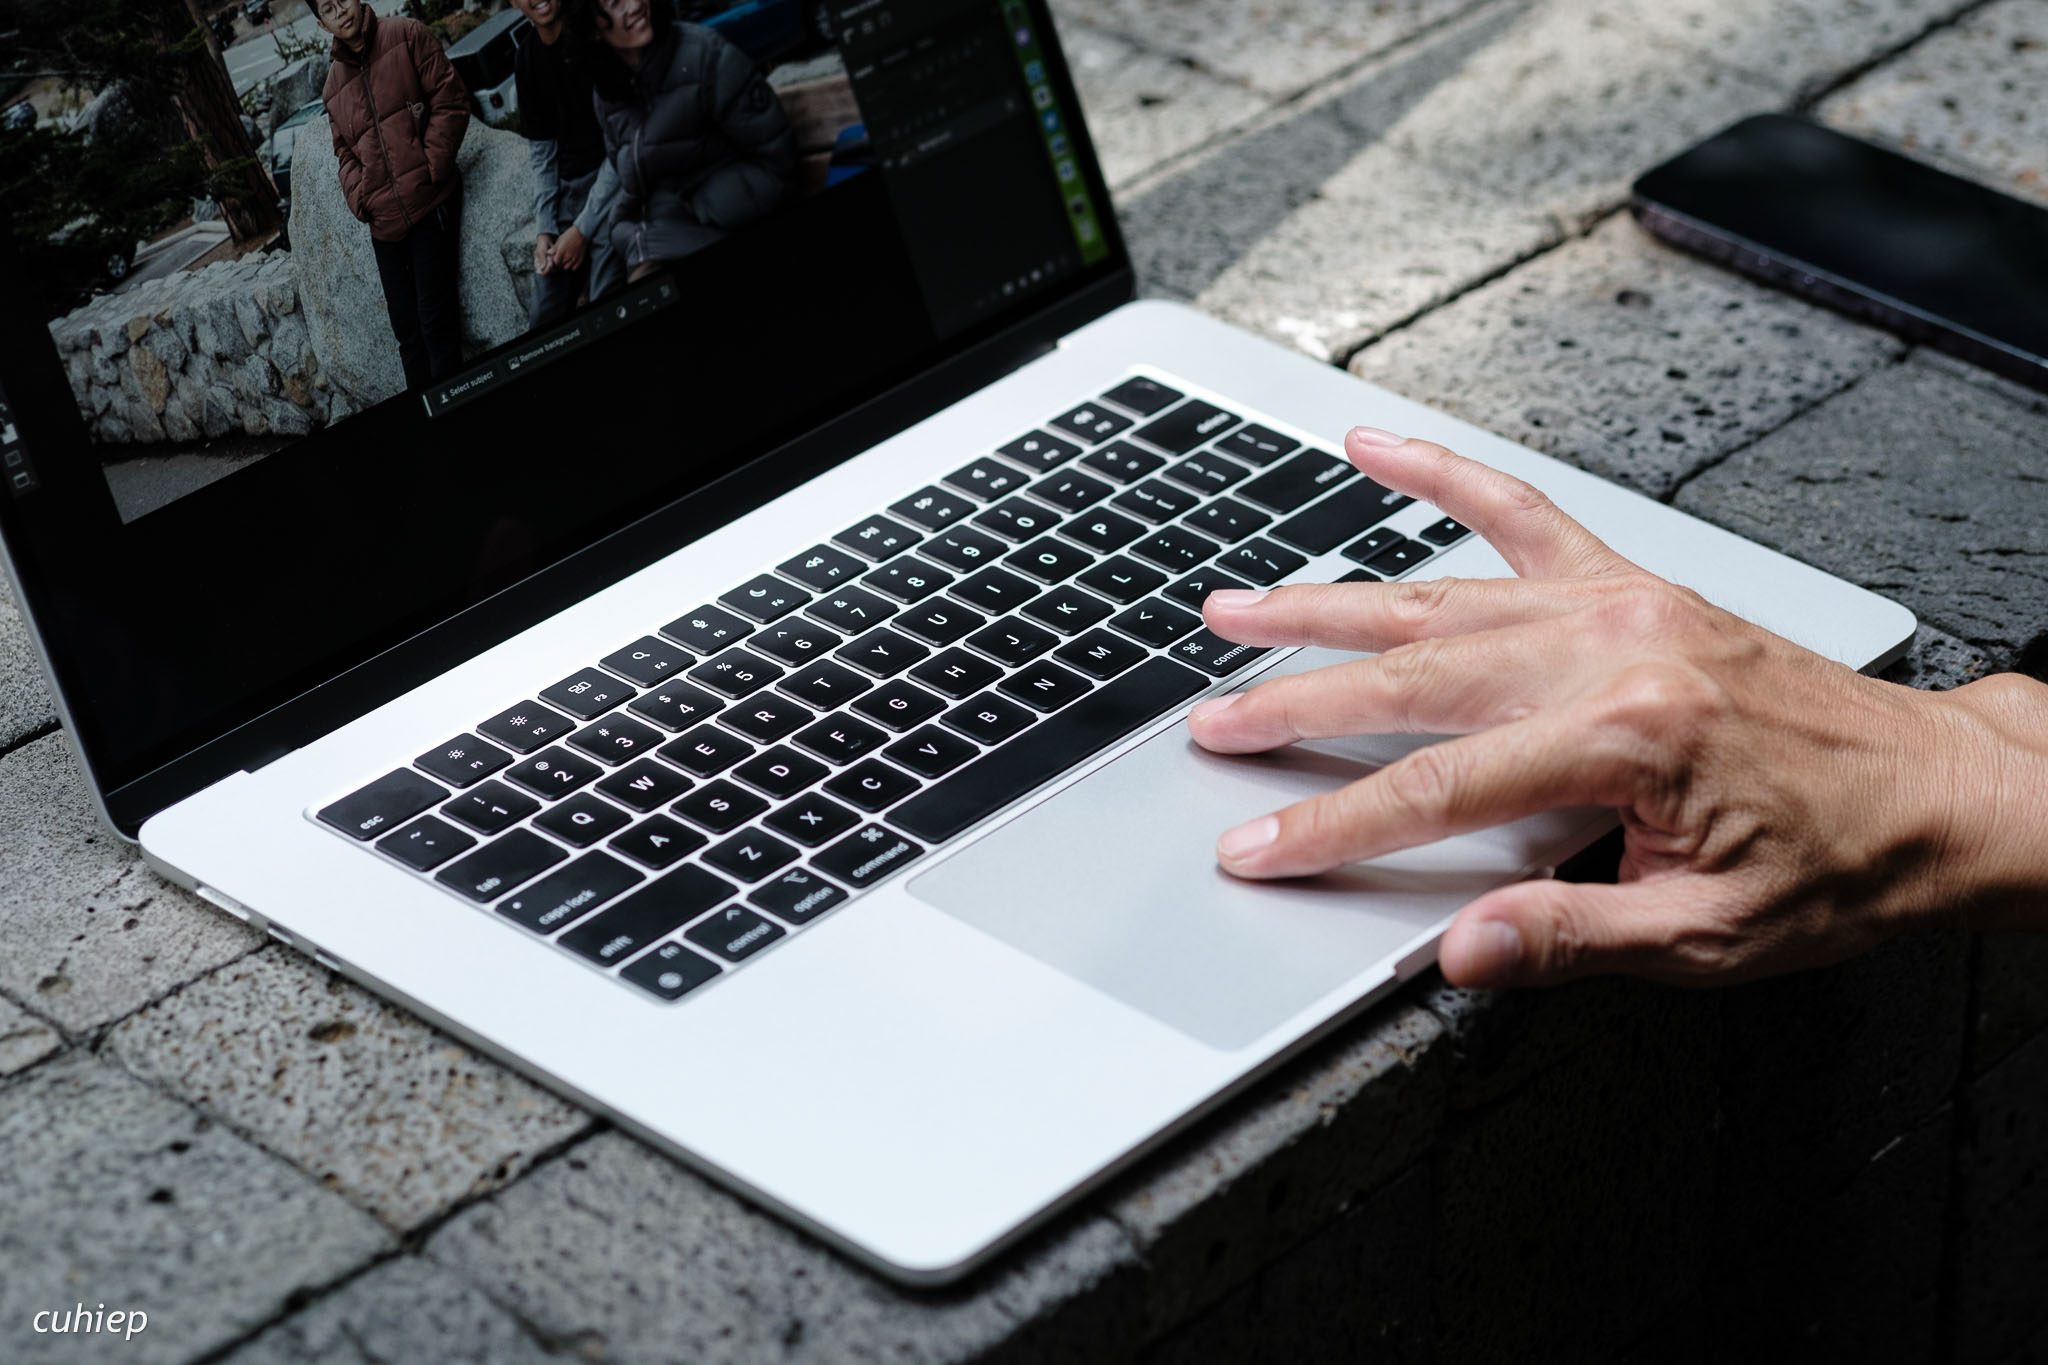 Apple-MacBook-Air-15-review-tinhte-cuhiep-16.jpg